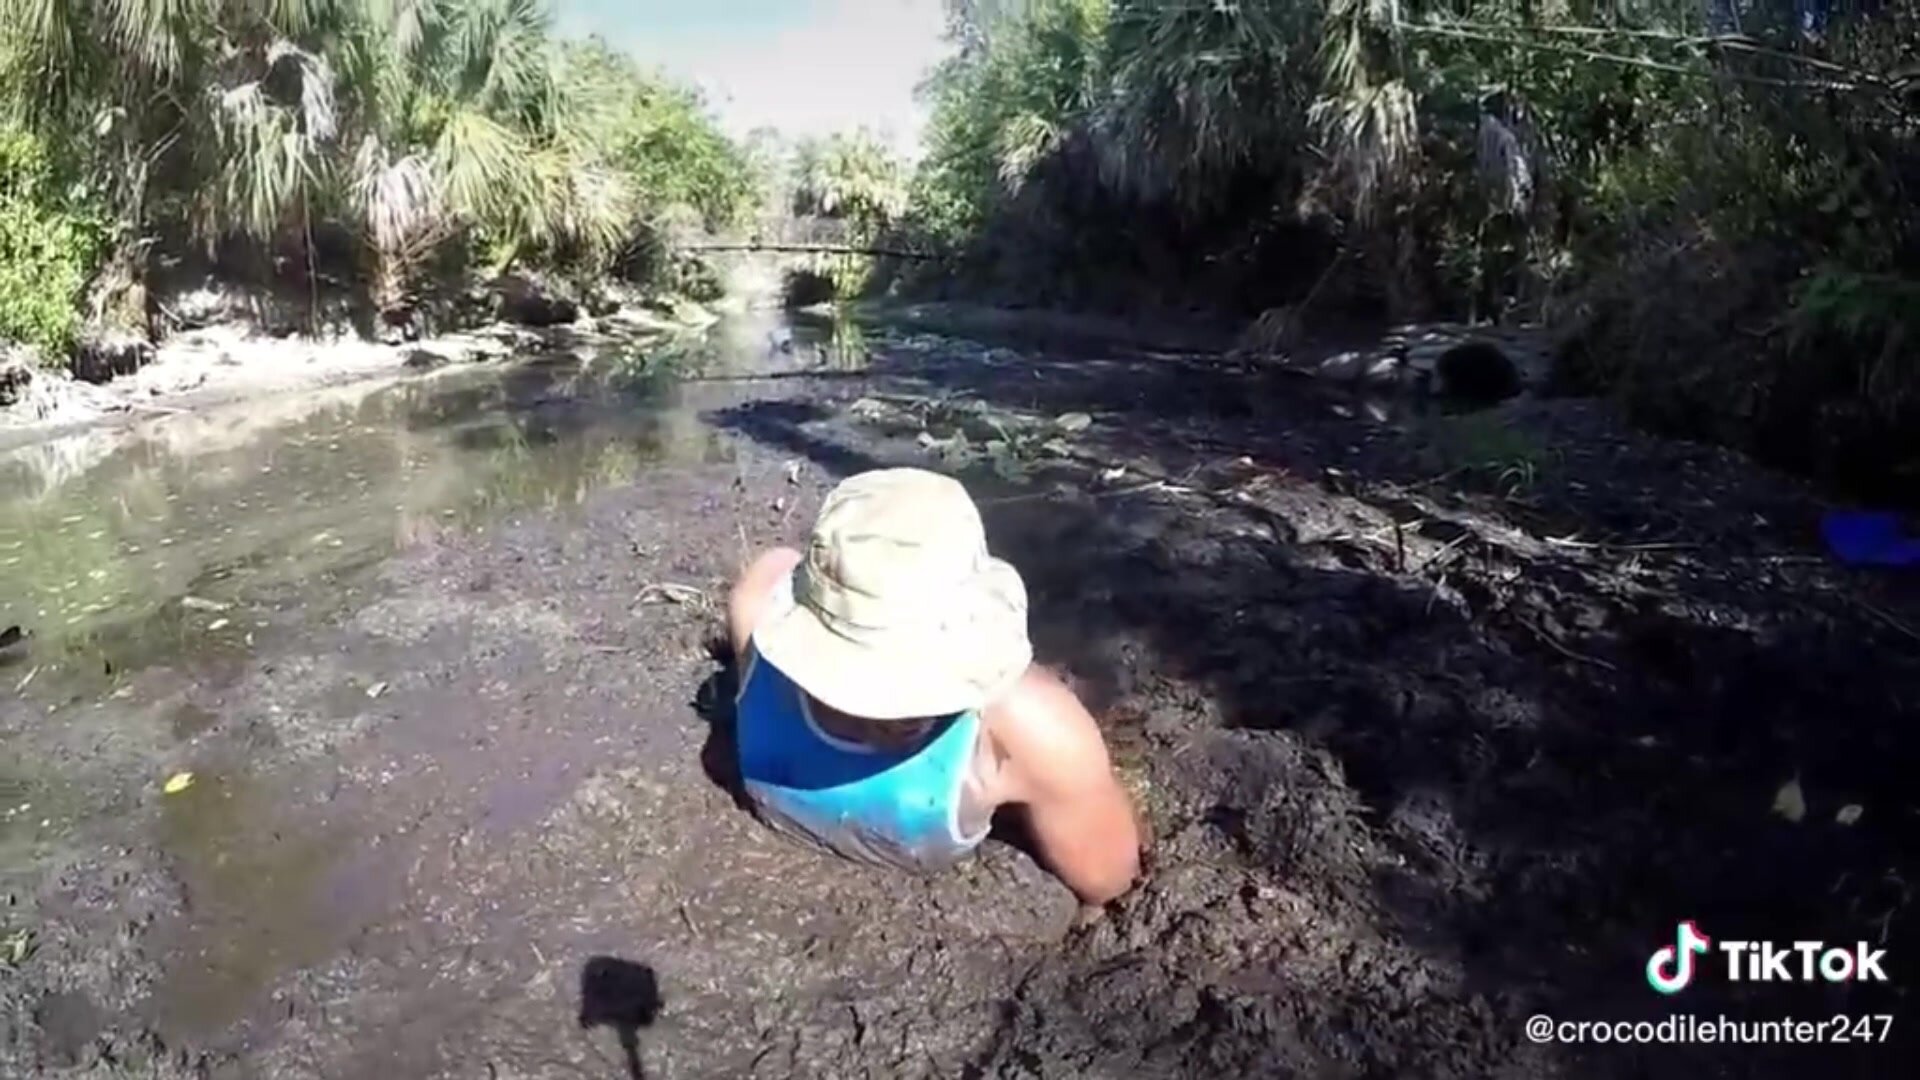 Tiktok hunter stuggles against sticky river mud